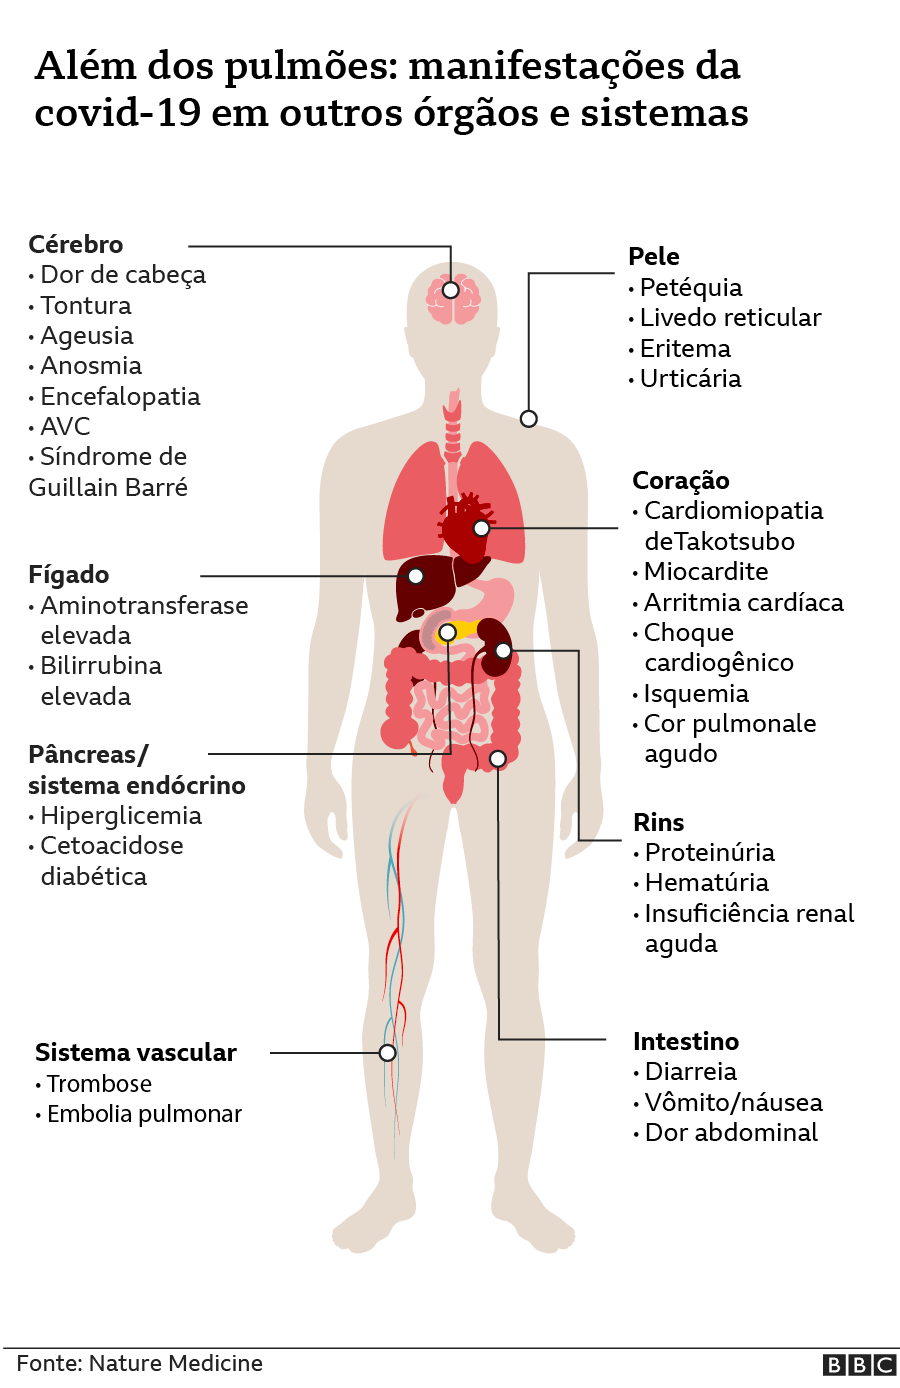 Manifestações da covid-19 em outros órgãos e sistemas